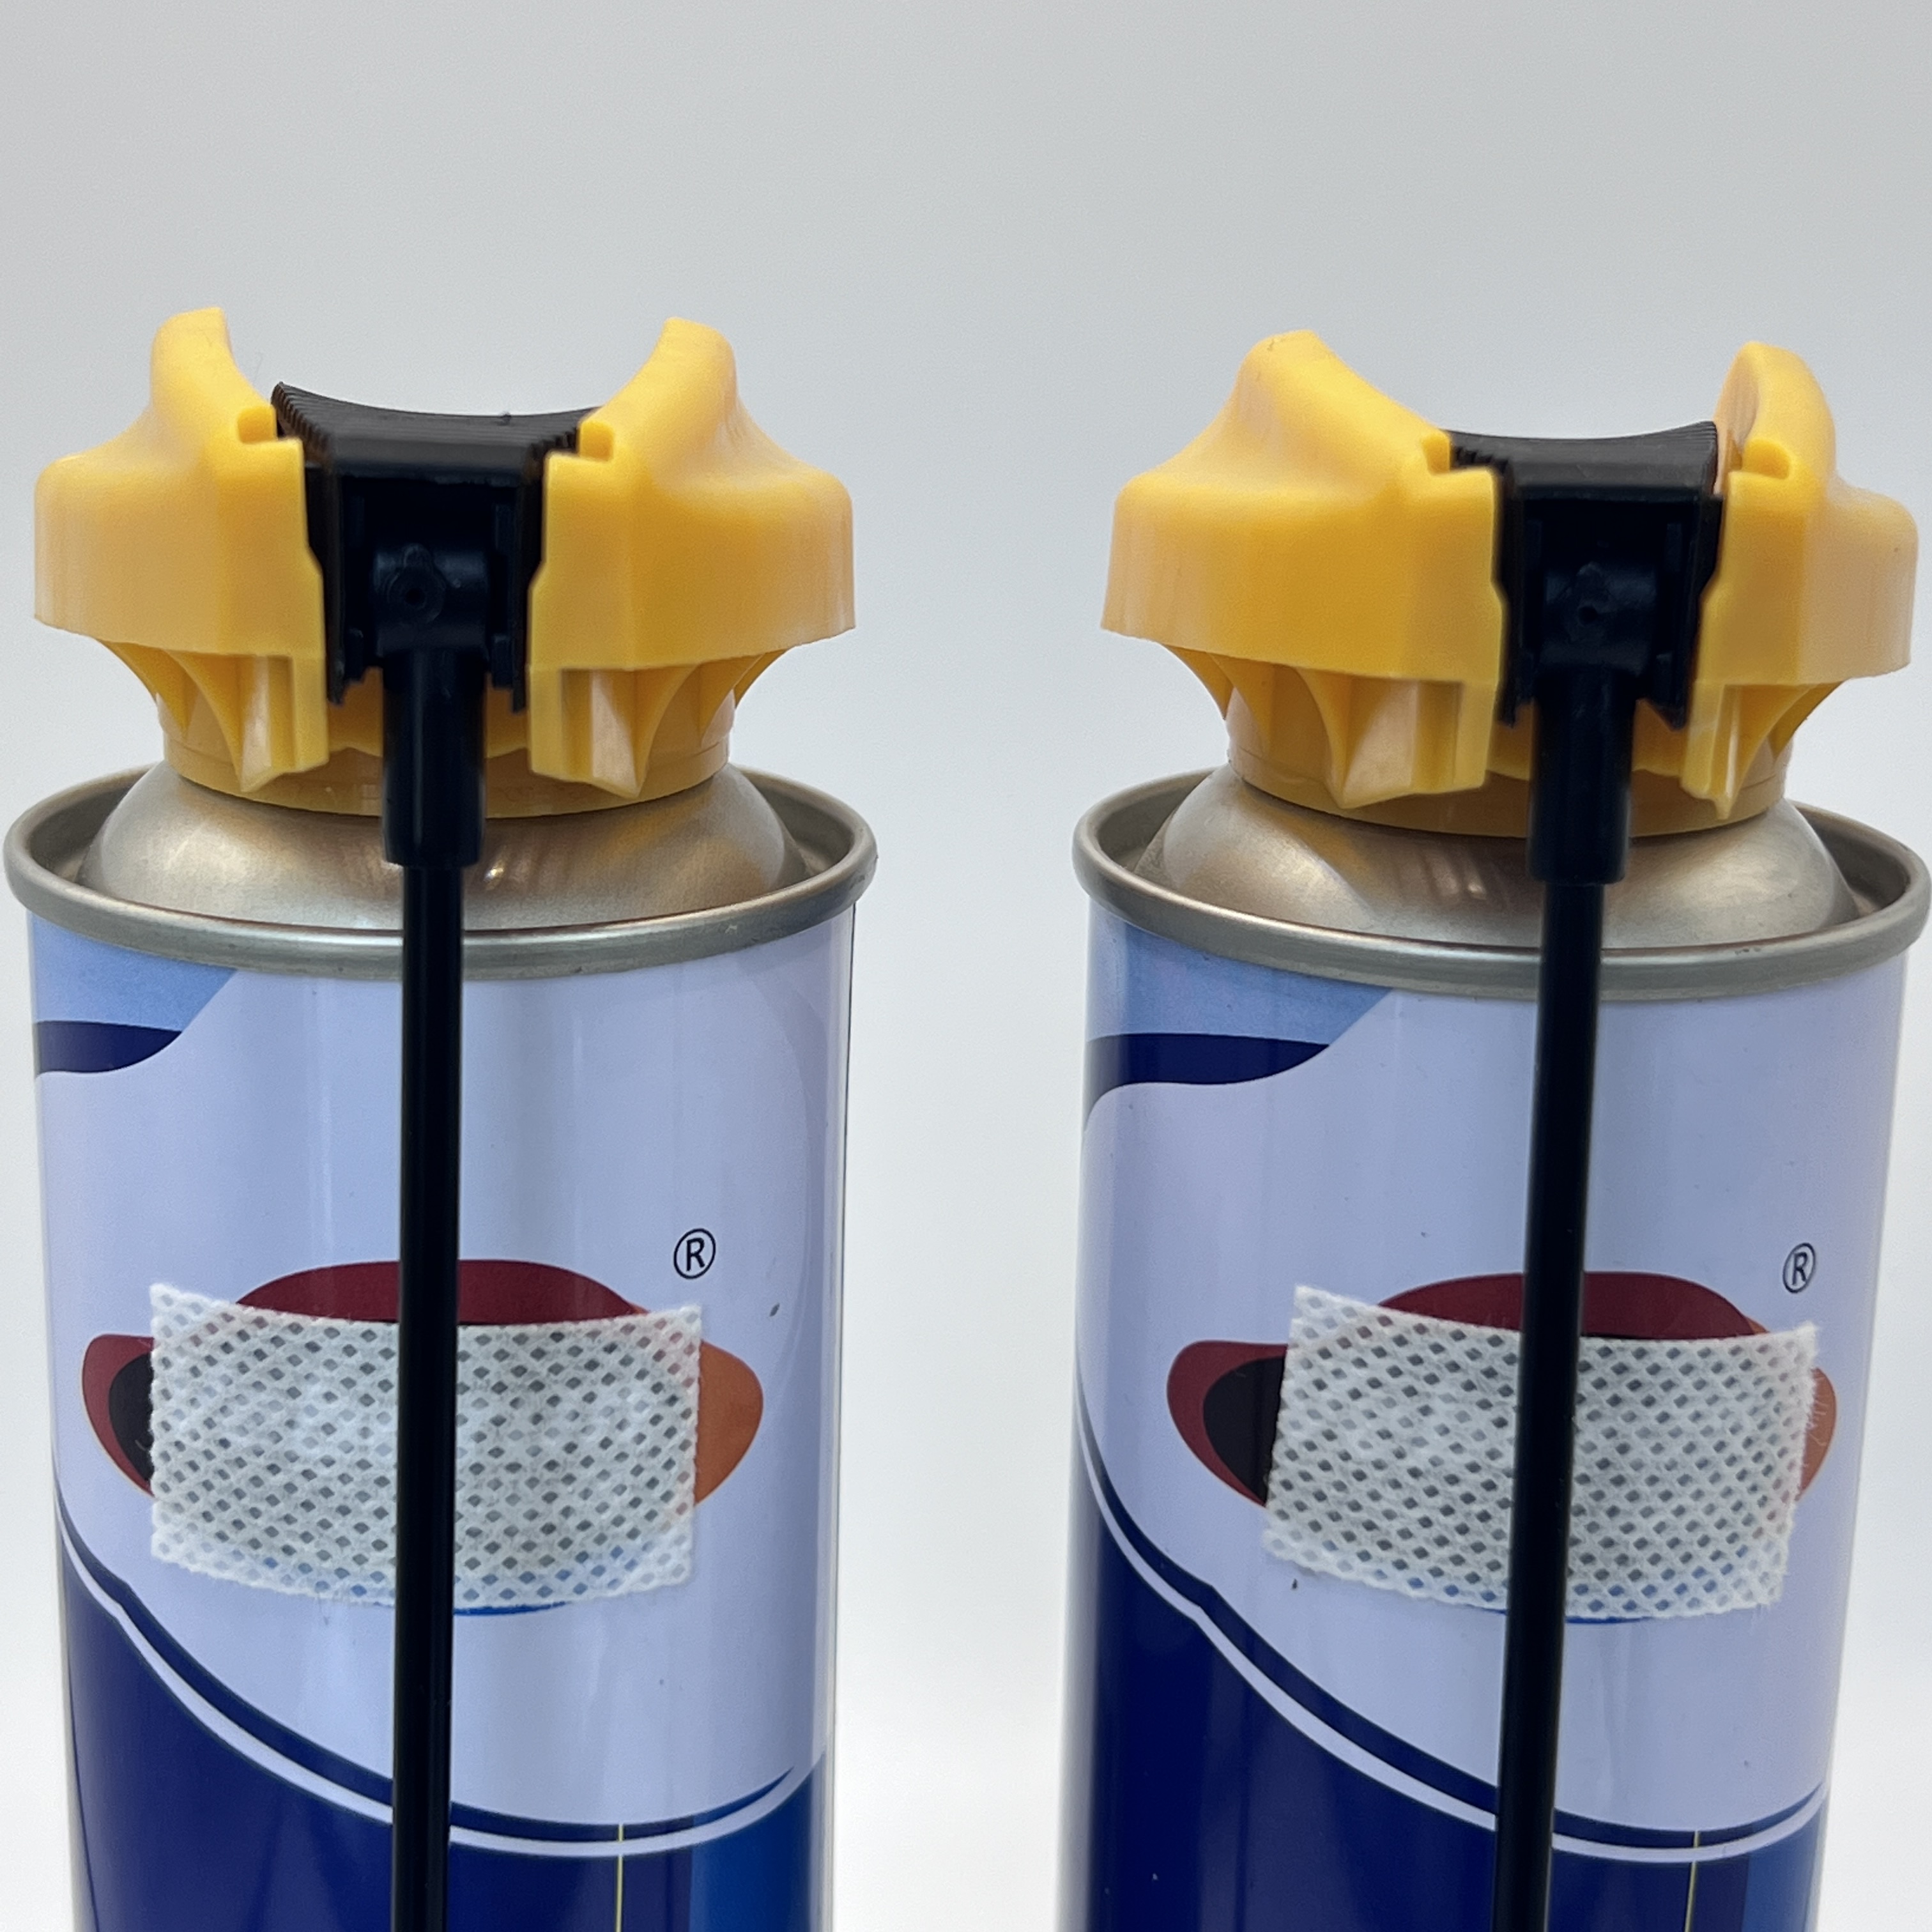 Ferramenta de reabastecimento de cartucho de gás de butano versátil - Solução de reabastecimento fácil para fogões e isqueiros portáteis